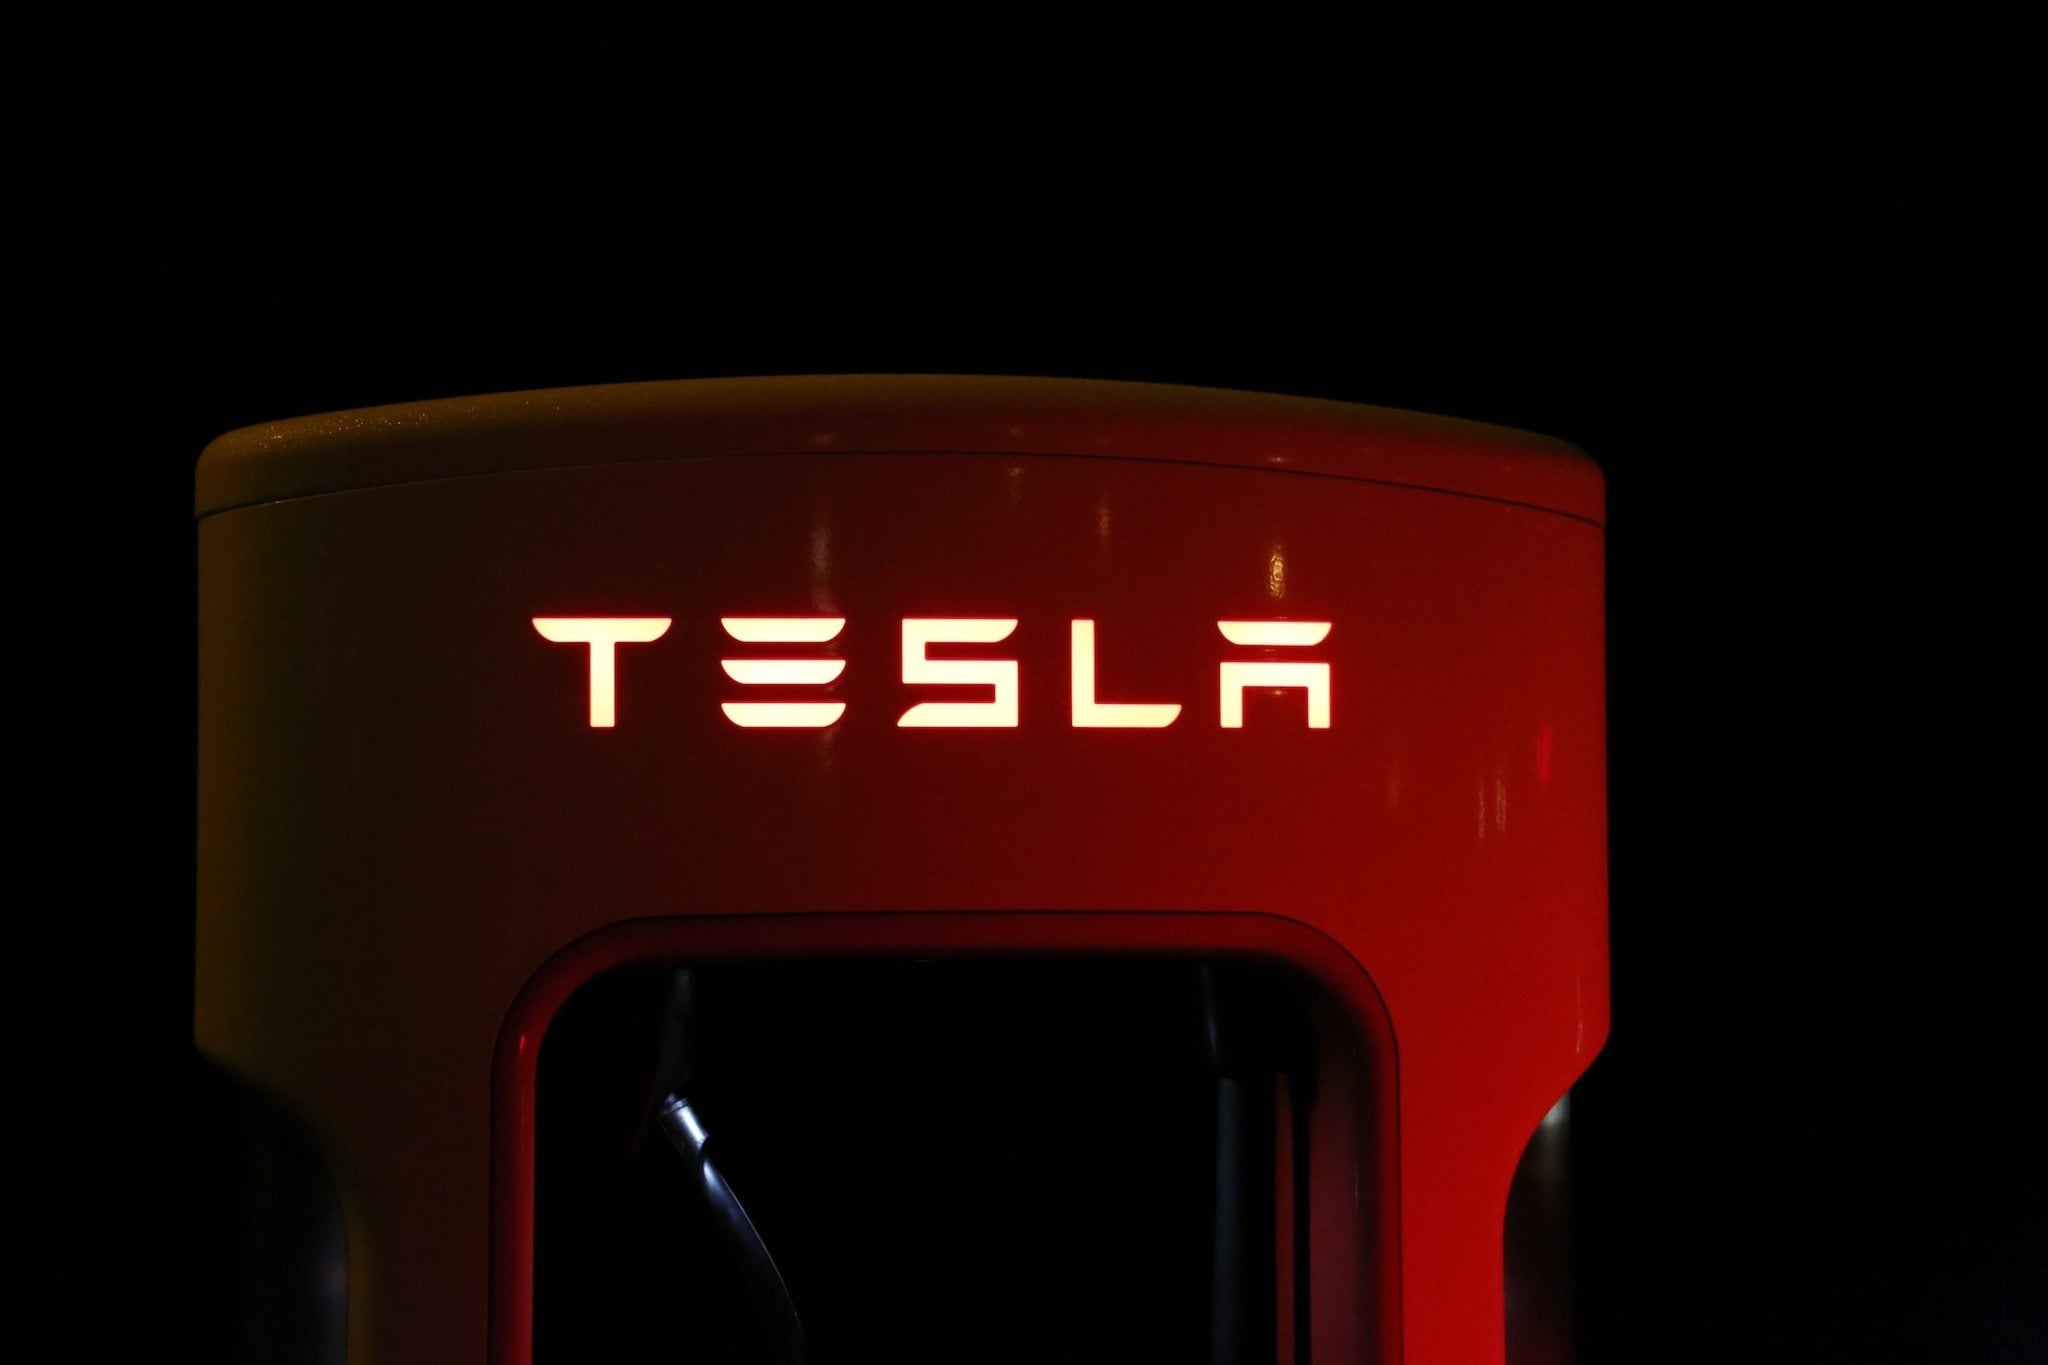 Starlink na Tesla Supercharger